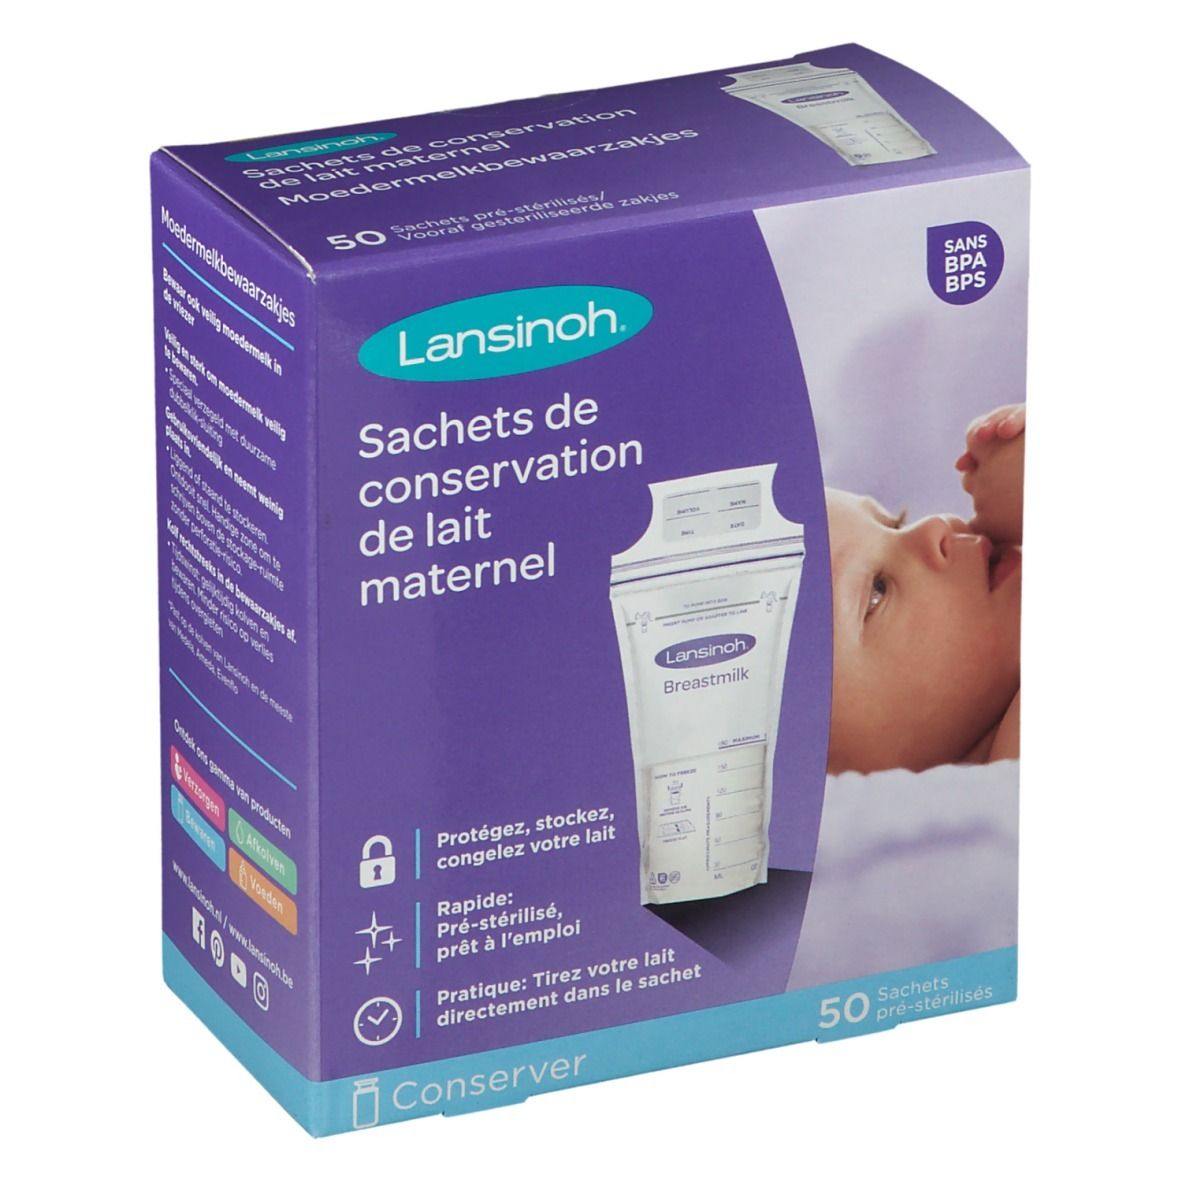 Lansinoh® Sachets de conservation du lait maternel